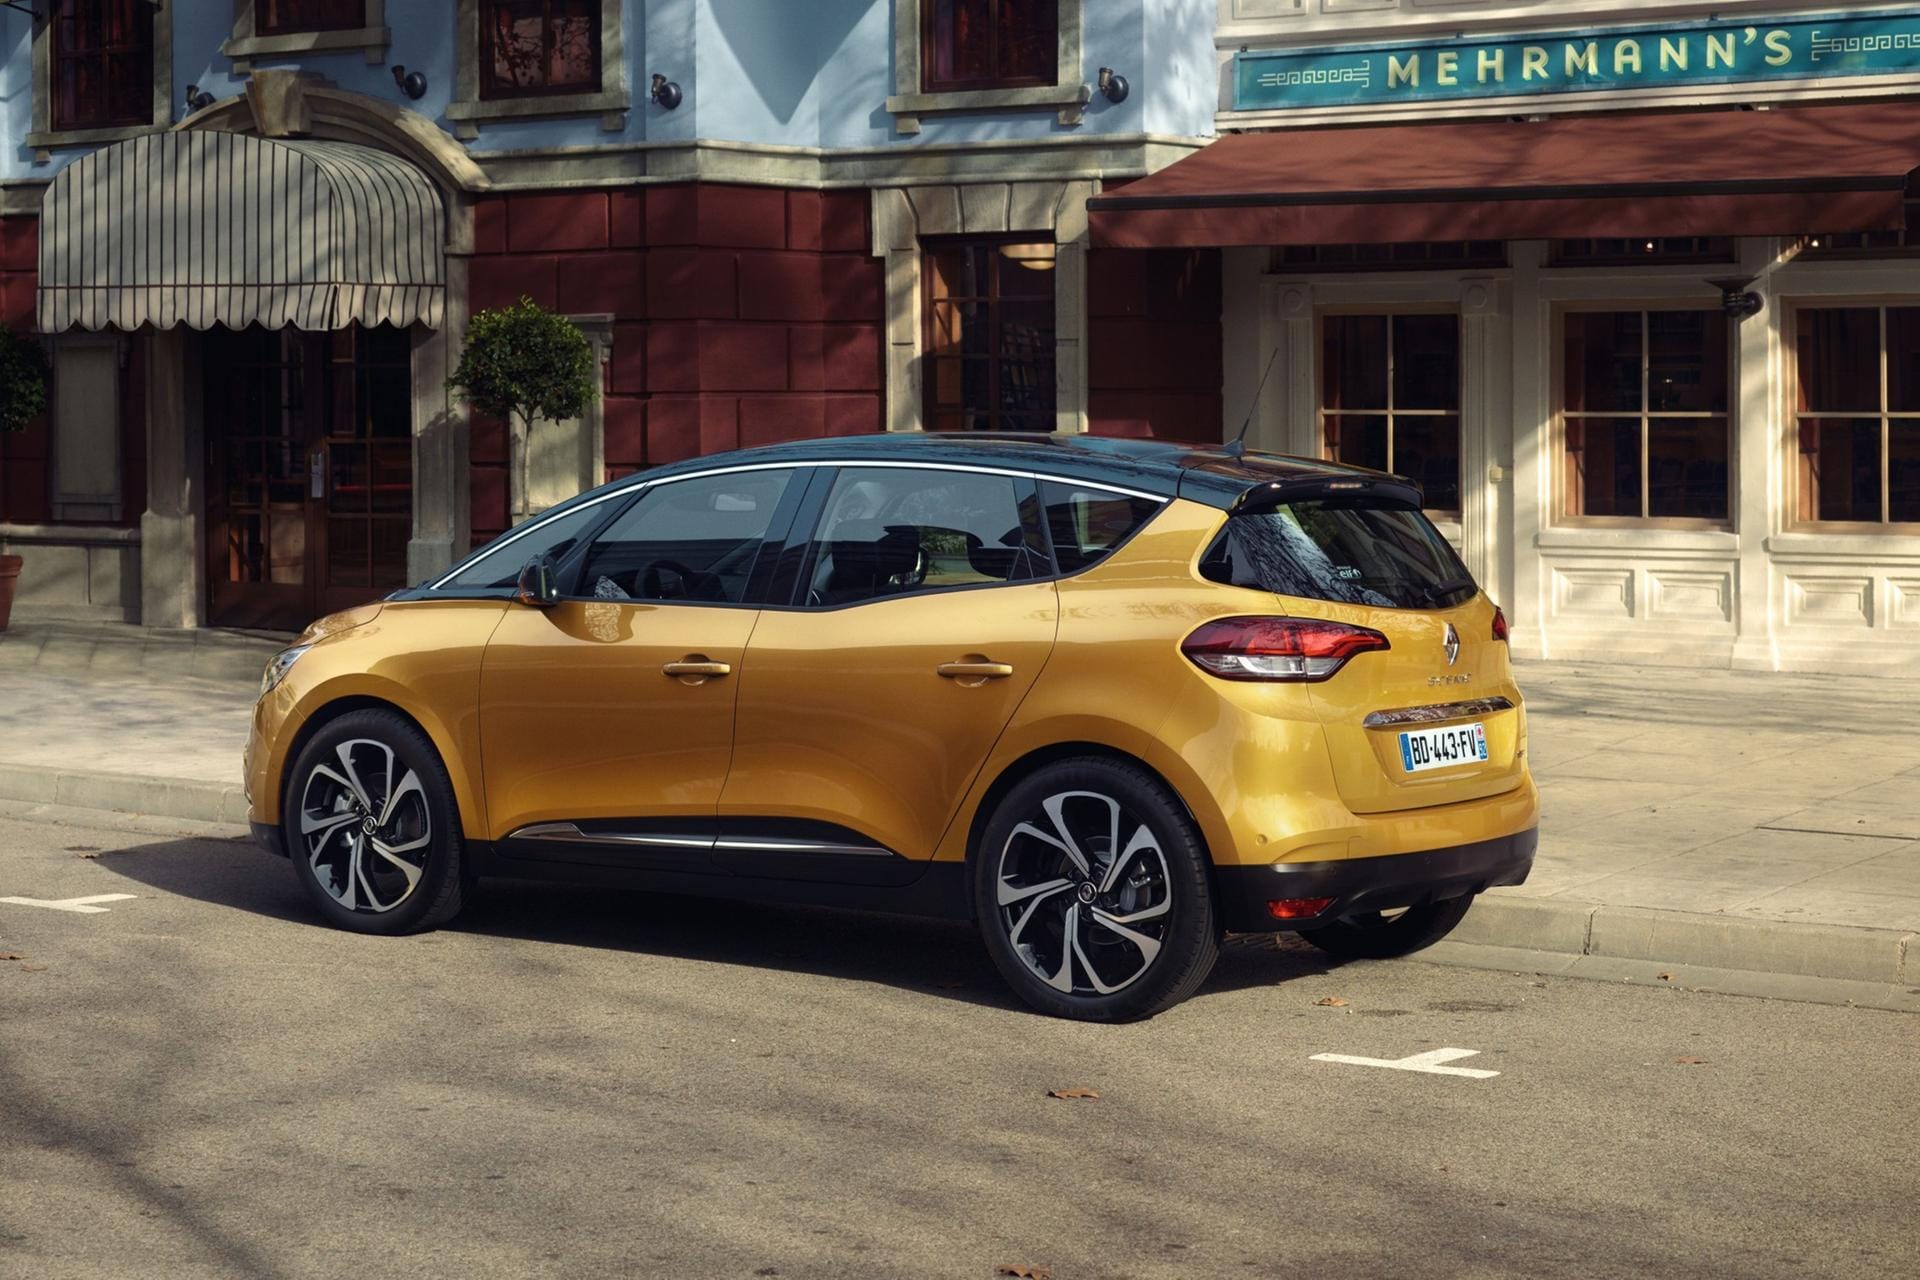 Die Preise für den neuen Renault Scénic sind noch nicht bekannt. Der Vorgänger startete unter 20.000 Euro.